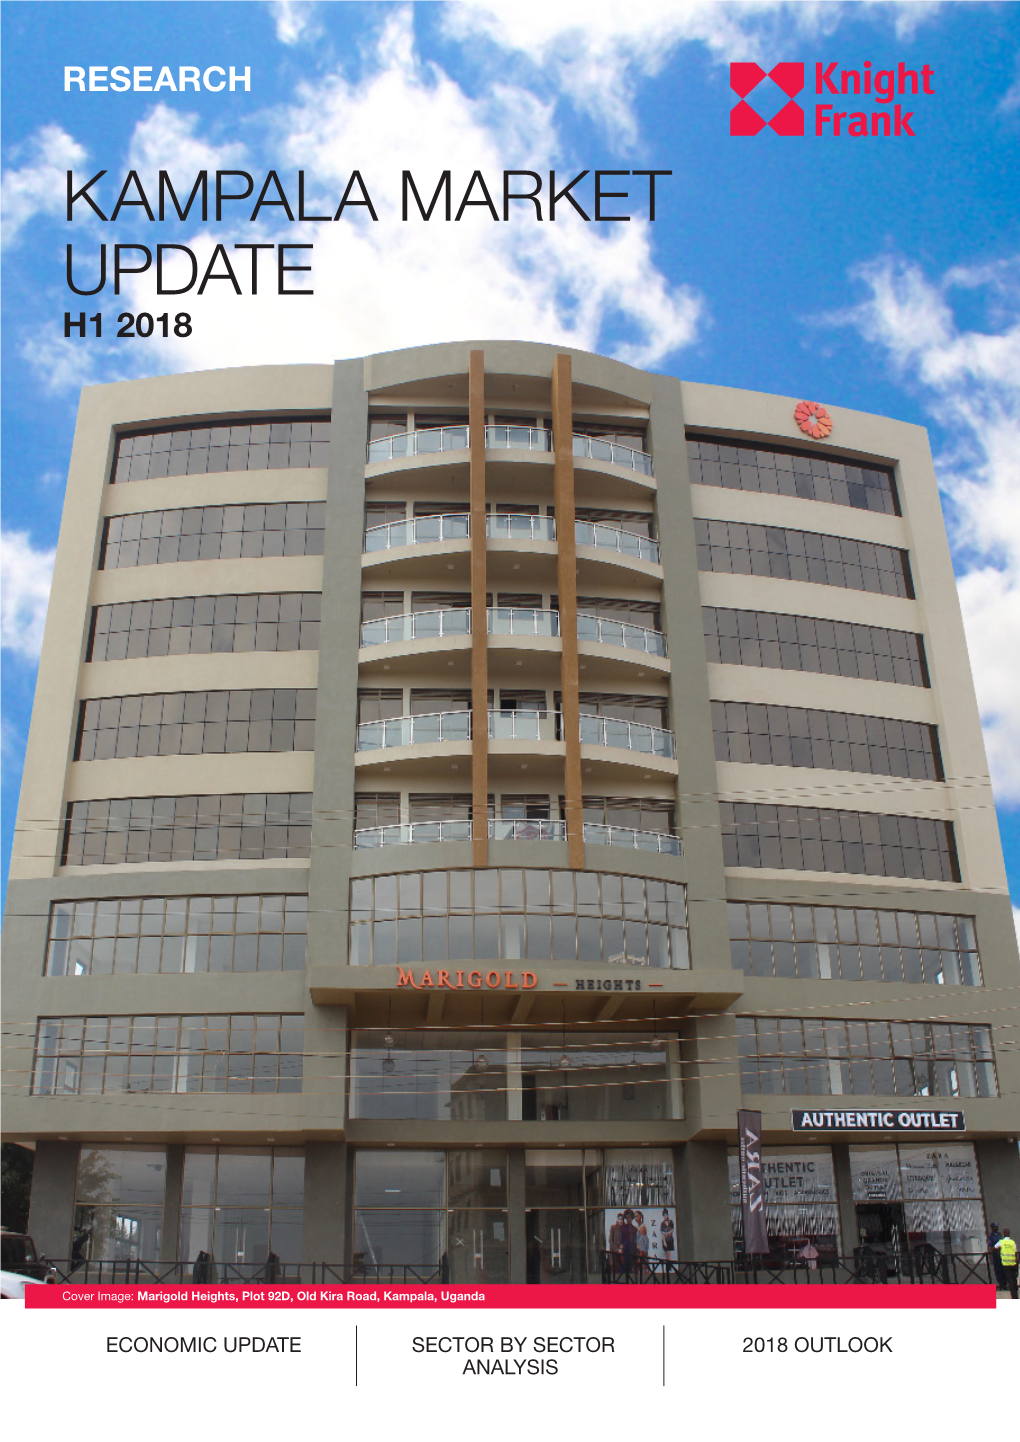 Kampala Market Update H1 2018 Research Kampala Market Update H1 20182018